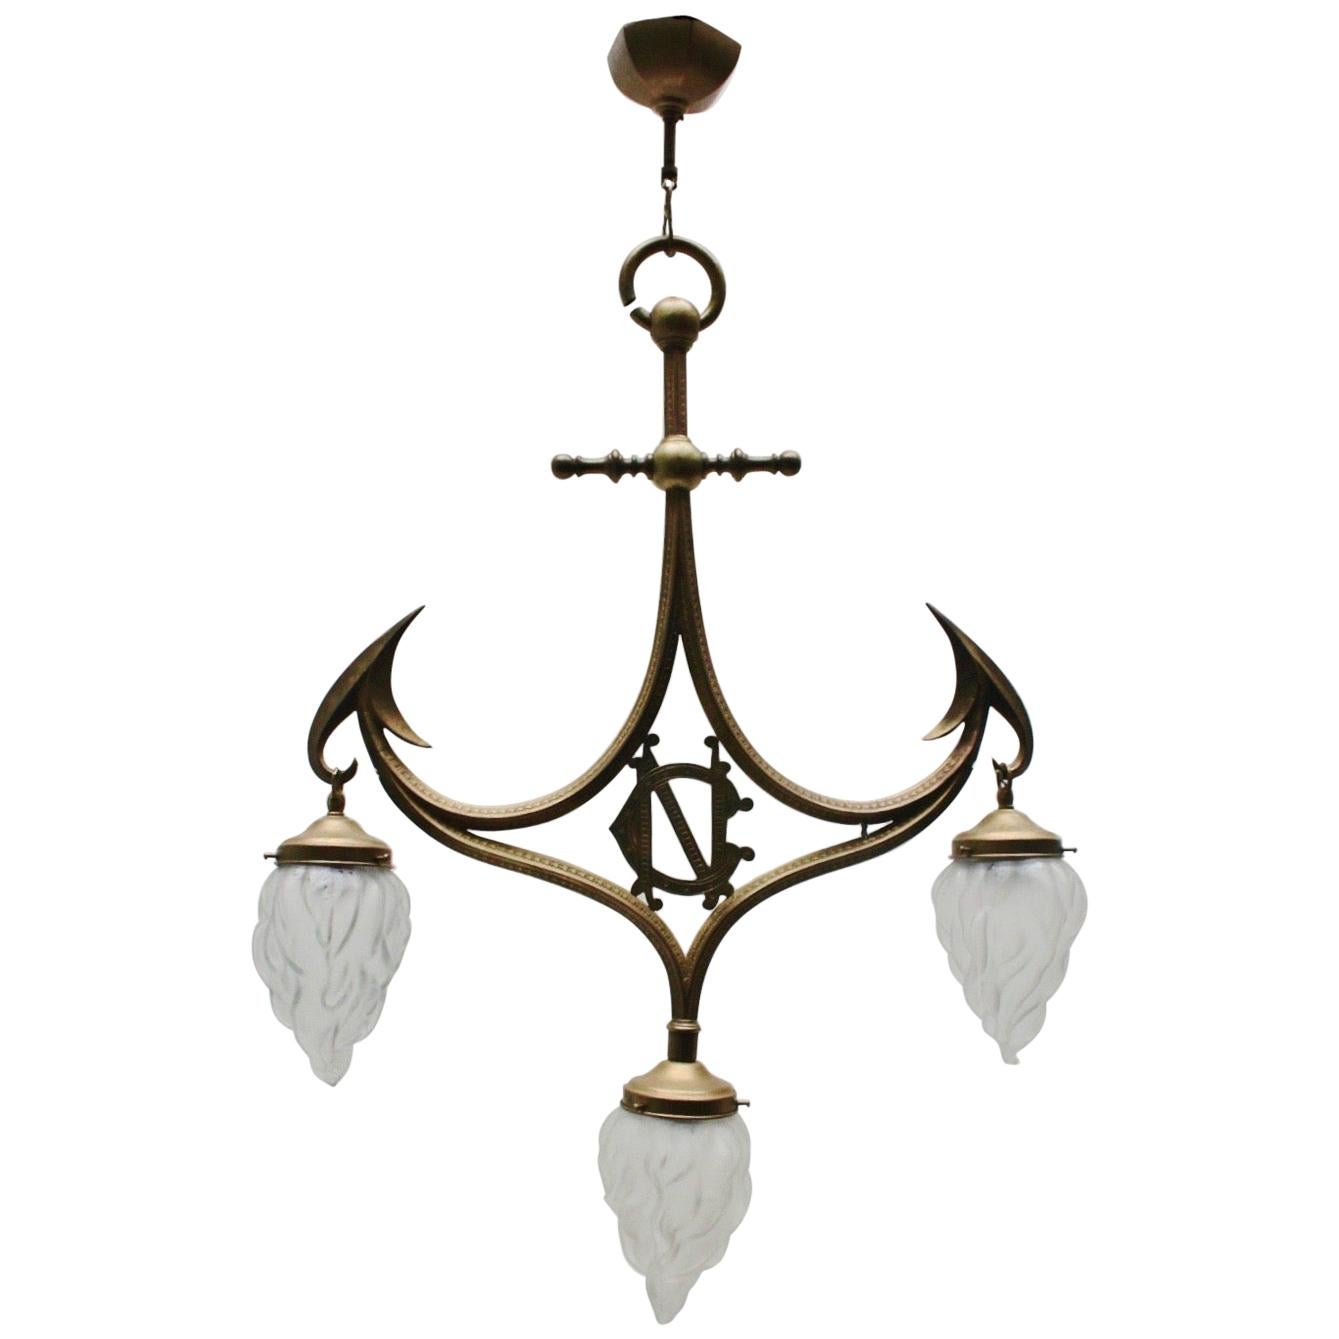 Art Nouveau Gothic Revival Brass & Glass 3-Light Pendant Lamp, 1910s For Sale